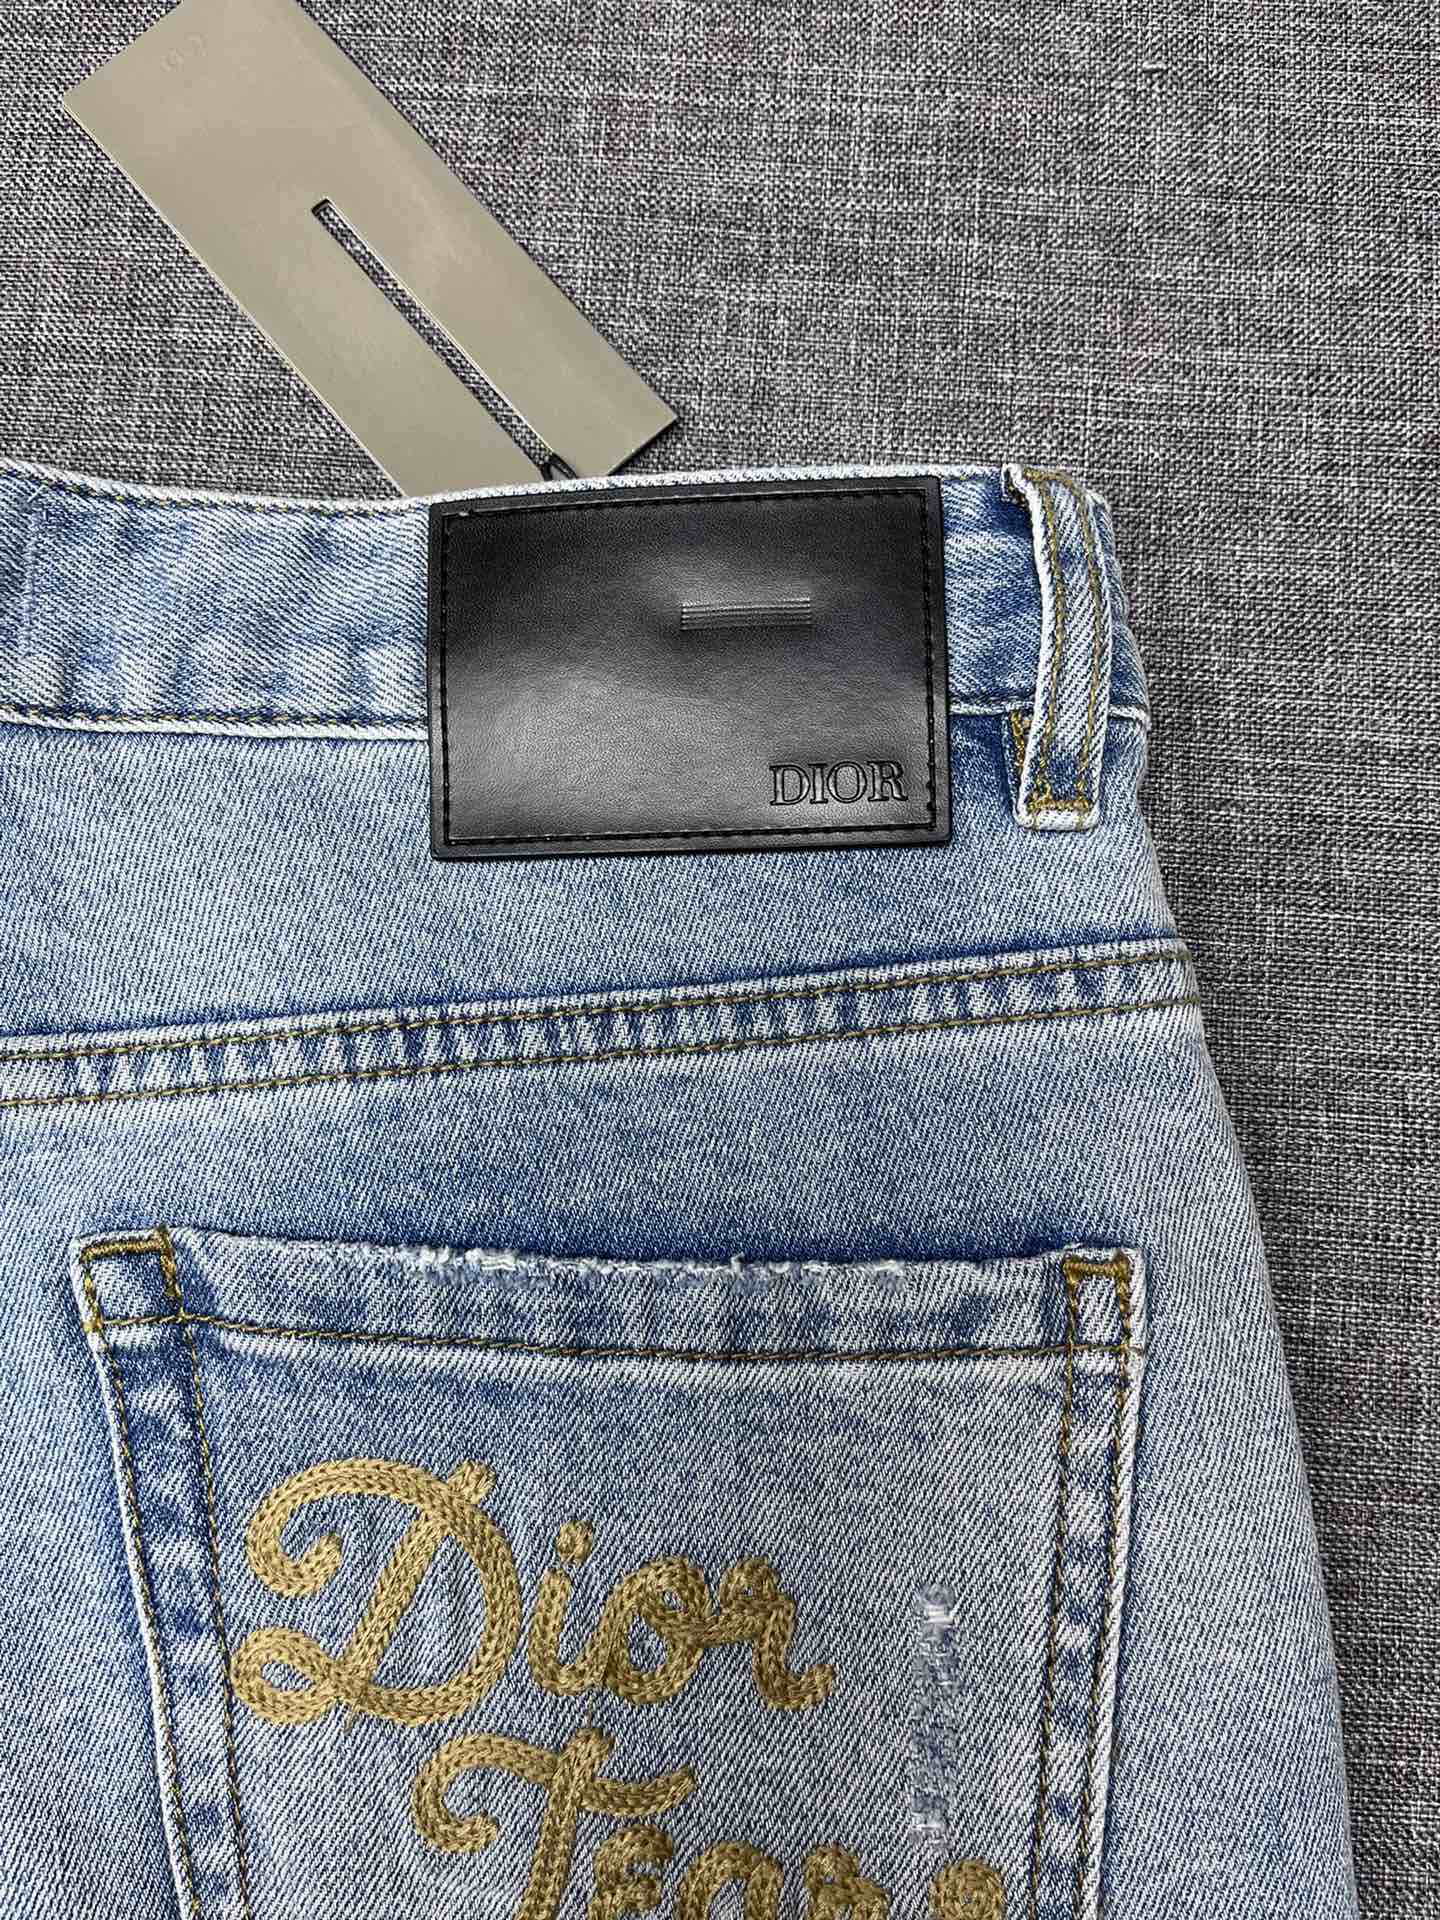 Dior迪奥家2024新款牛仔裤高档大气富有时尚元素原单牛仔裤百年奢侈品牌极具英国传统高贵的设计风格赢取